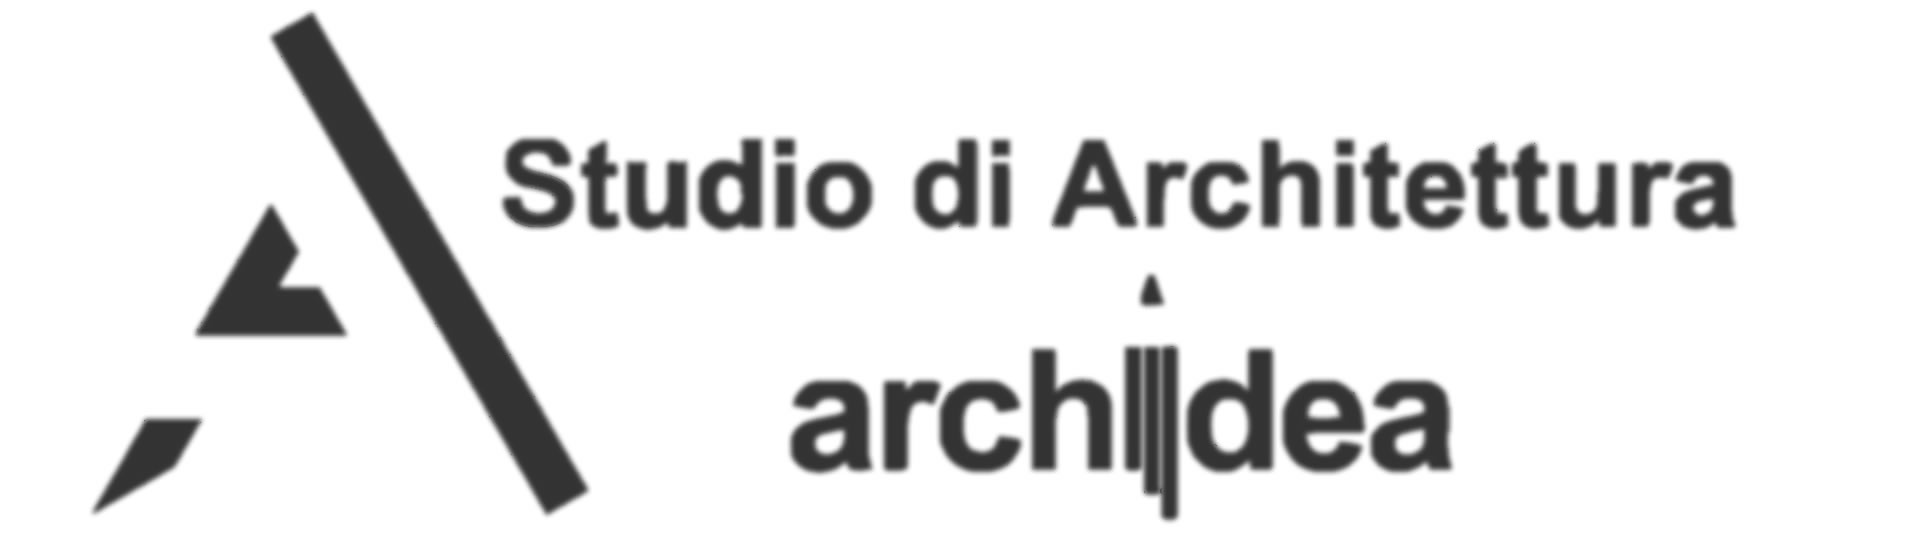 Studio di Architettura Archidea - Architetto Davide Ferrari 